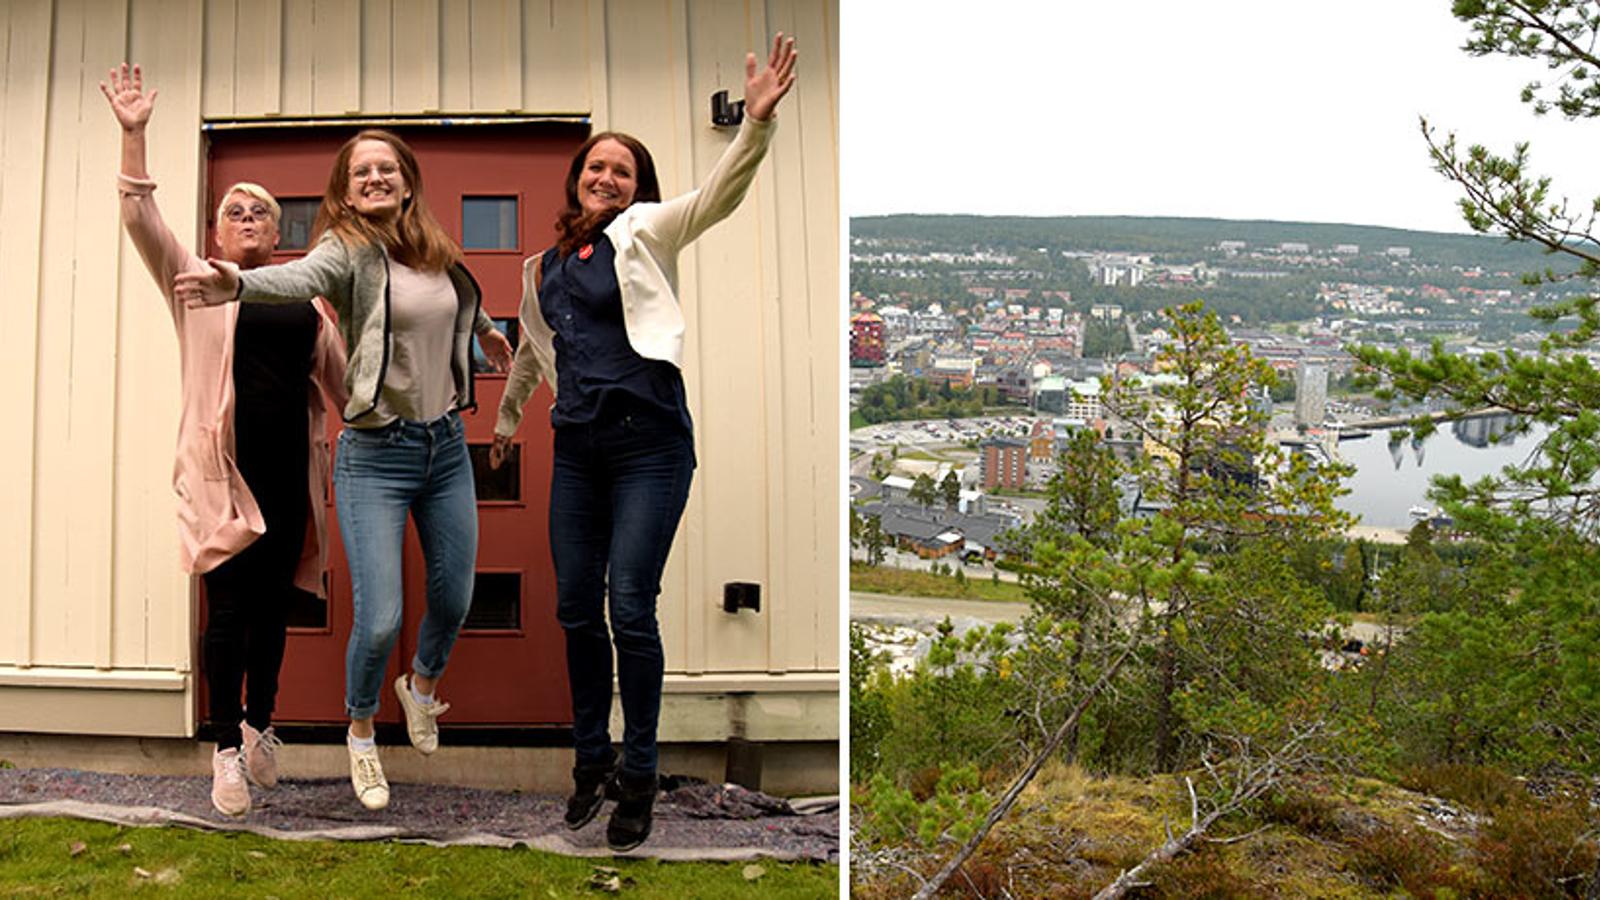 Till vänster: Anita Allandotter, Evangelina Bergh och Carina Lindgren från Frälsningsarmén Örnsköldsvik. De hoppar glatt upp i luften och tittar in i kameran. Till höger: Bild på Örnsköldsvik. På bilden syns olika bostadshus som ligger vid vattnet.